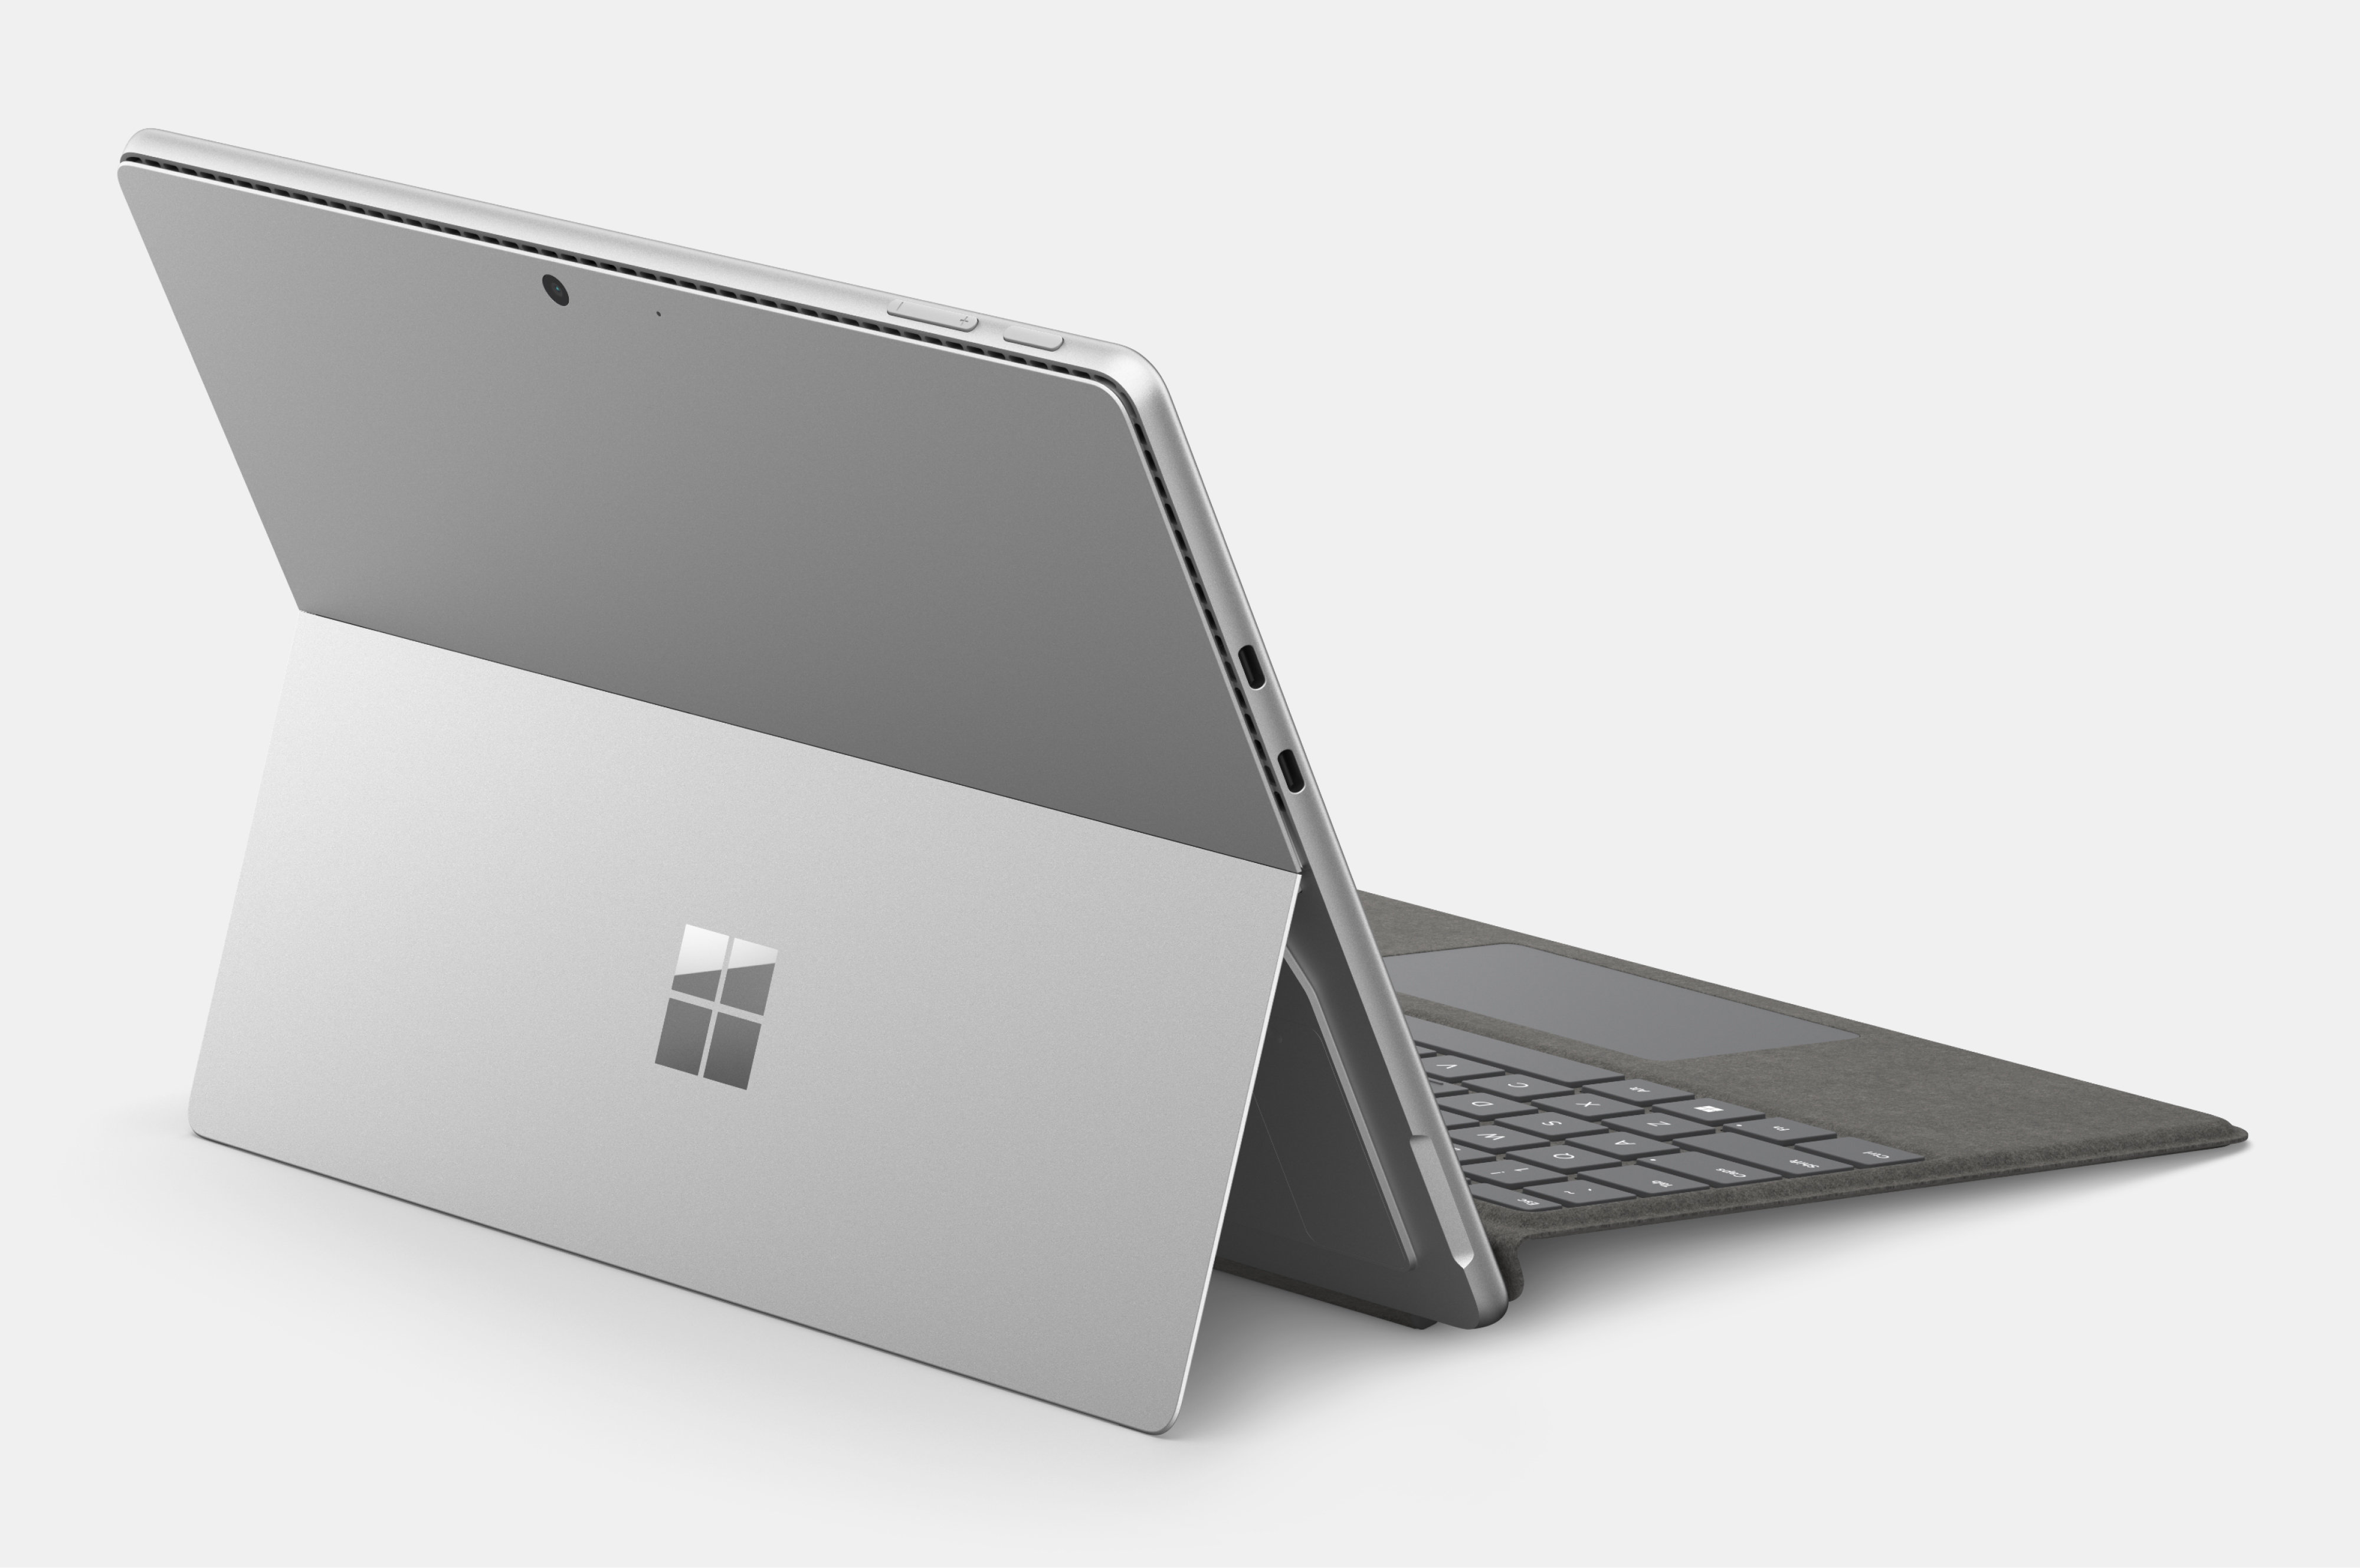 展示採用膝上型電腦模式且打開的 Surface Pro 10，讓 Surface Kickstand 支架亮相